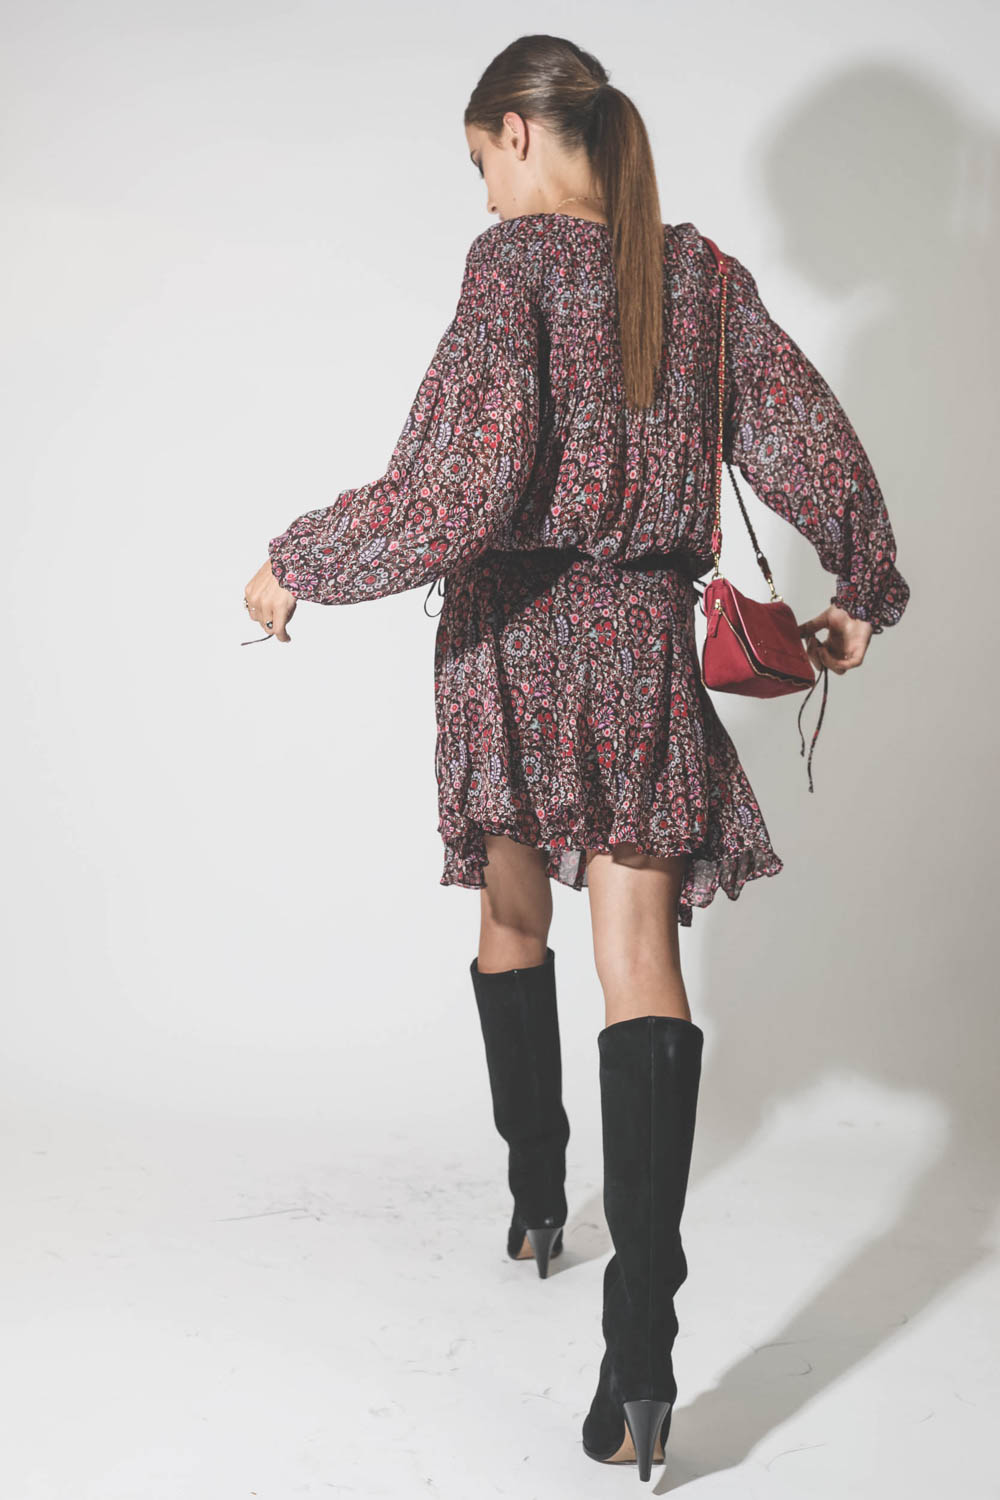 Robe manches longues au dessus du genoux en viscose imprimé fleurs marron et rose Noanne Marant Etoile. Porté avec un sac rose.